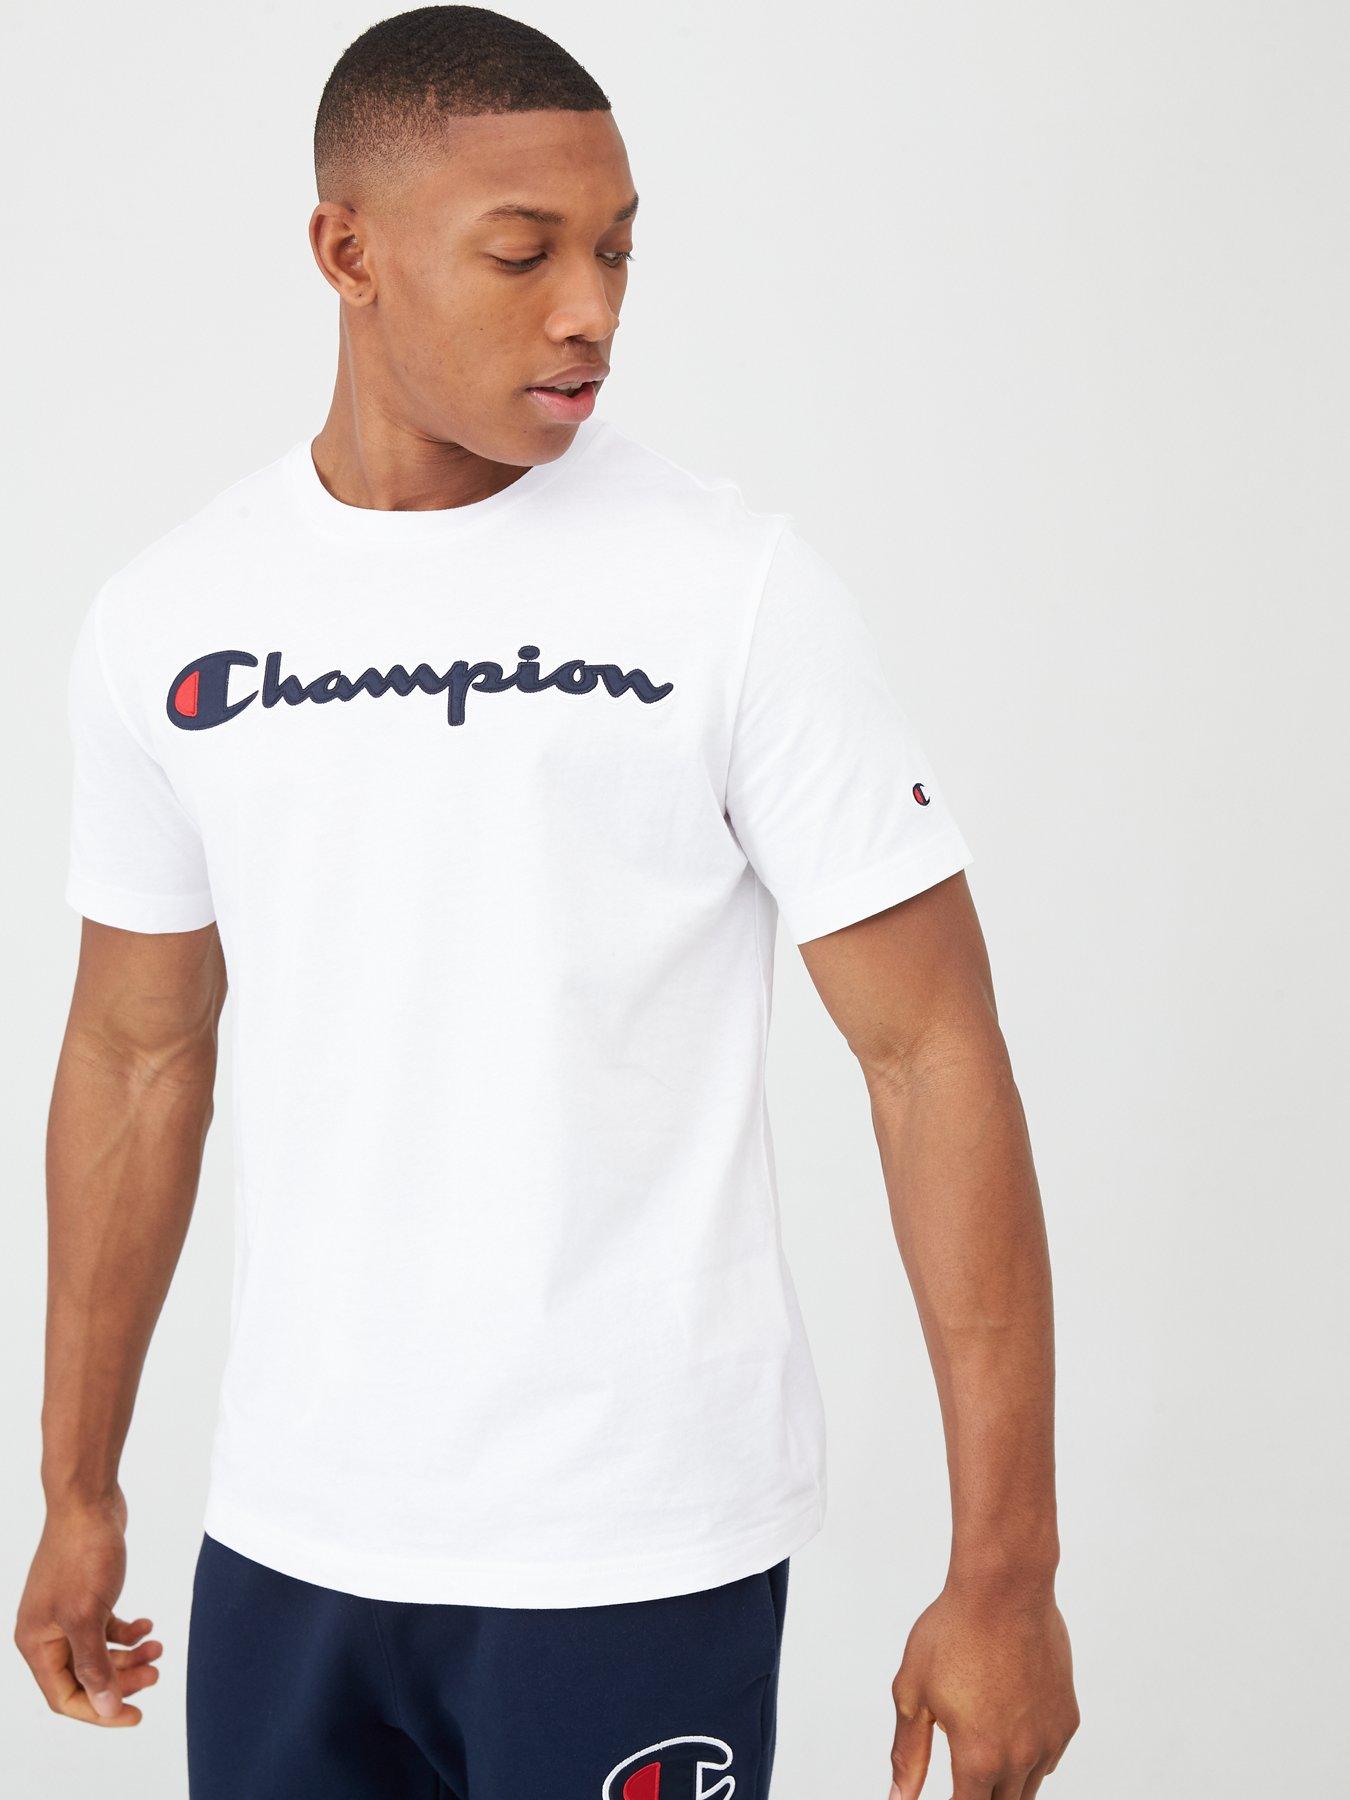 champion clothing uk mens